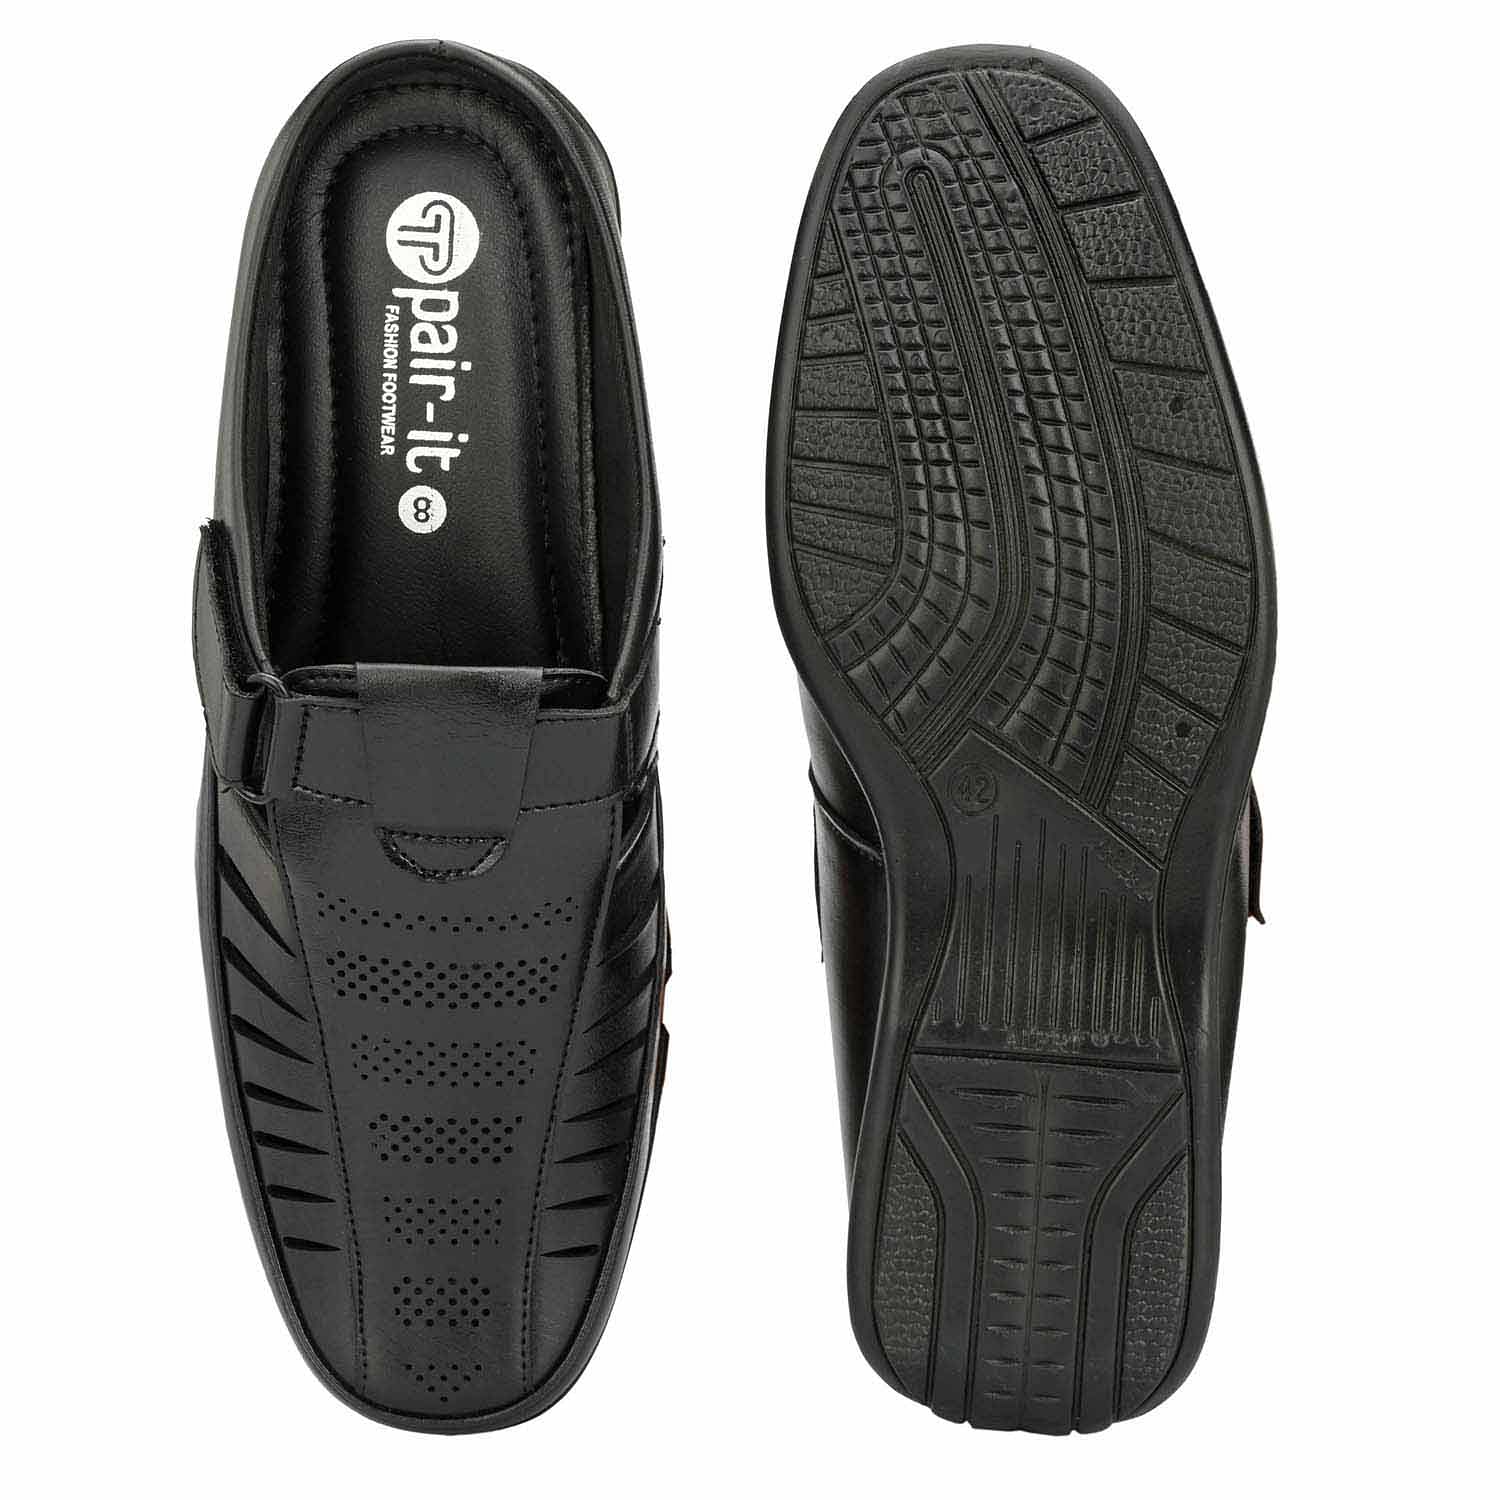 Pair-it Mn Sandals - Black-LZ-Roman-107